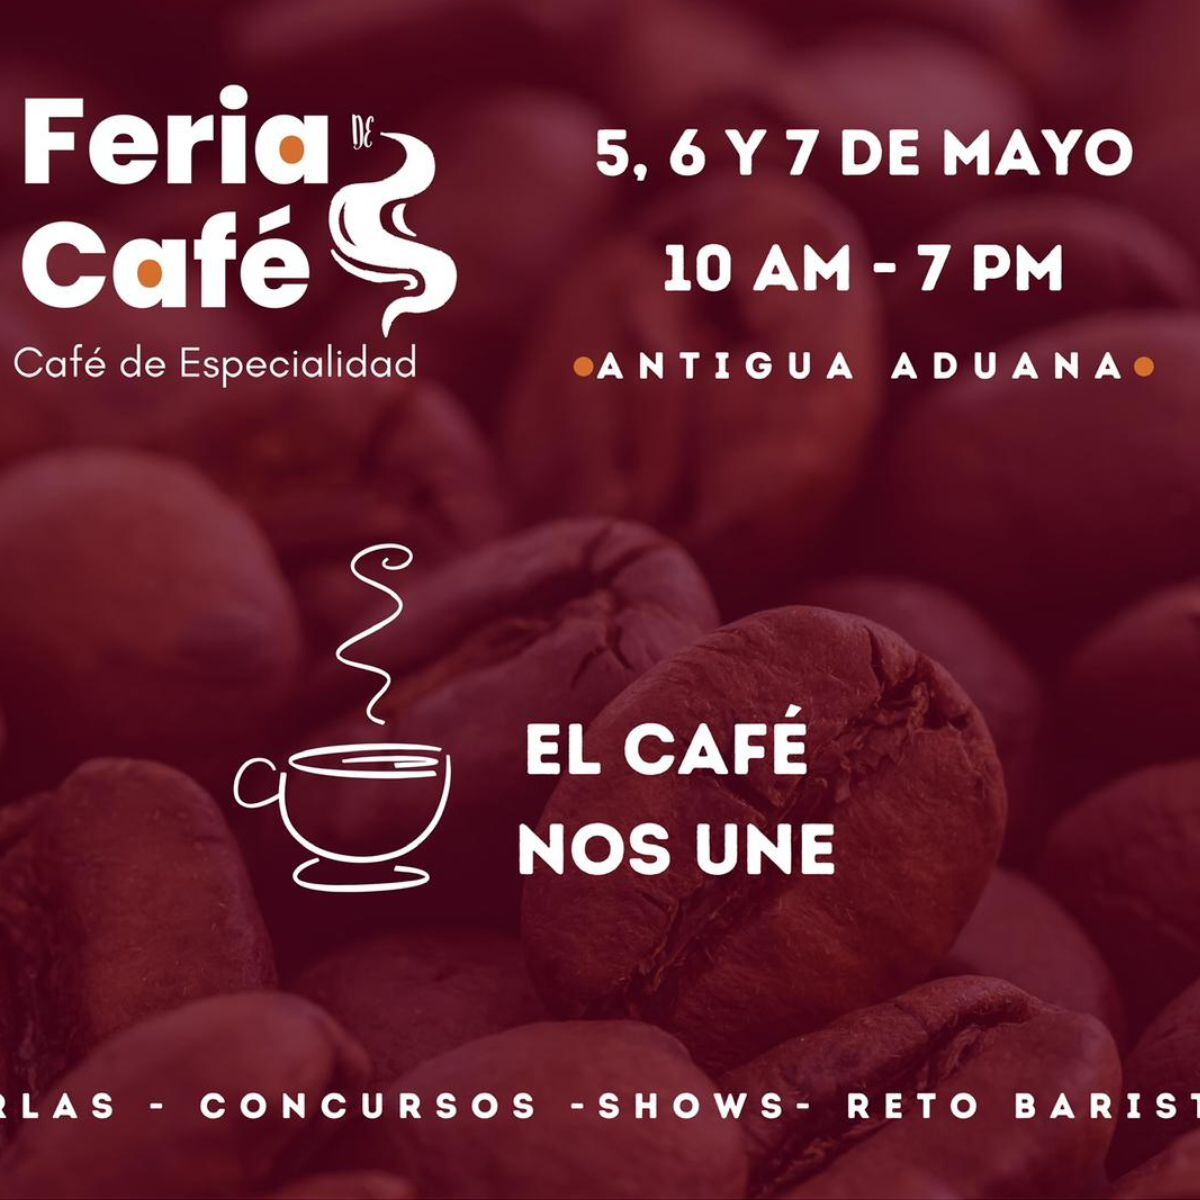 La Feria Nacional Especializada del Café contará con charlas, concursos, shows y muchas otras actividades para el disfrute del público.